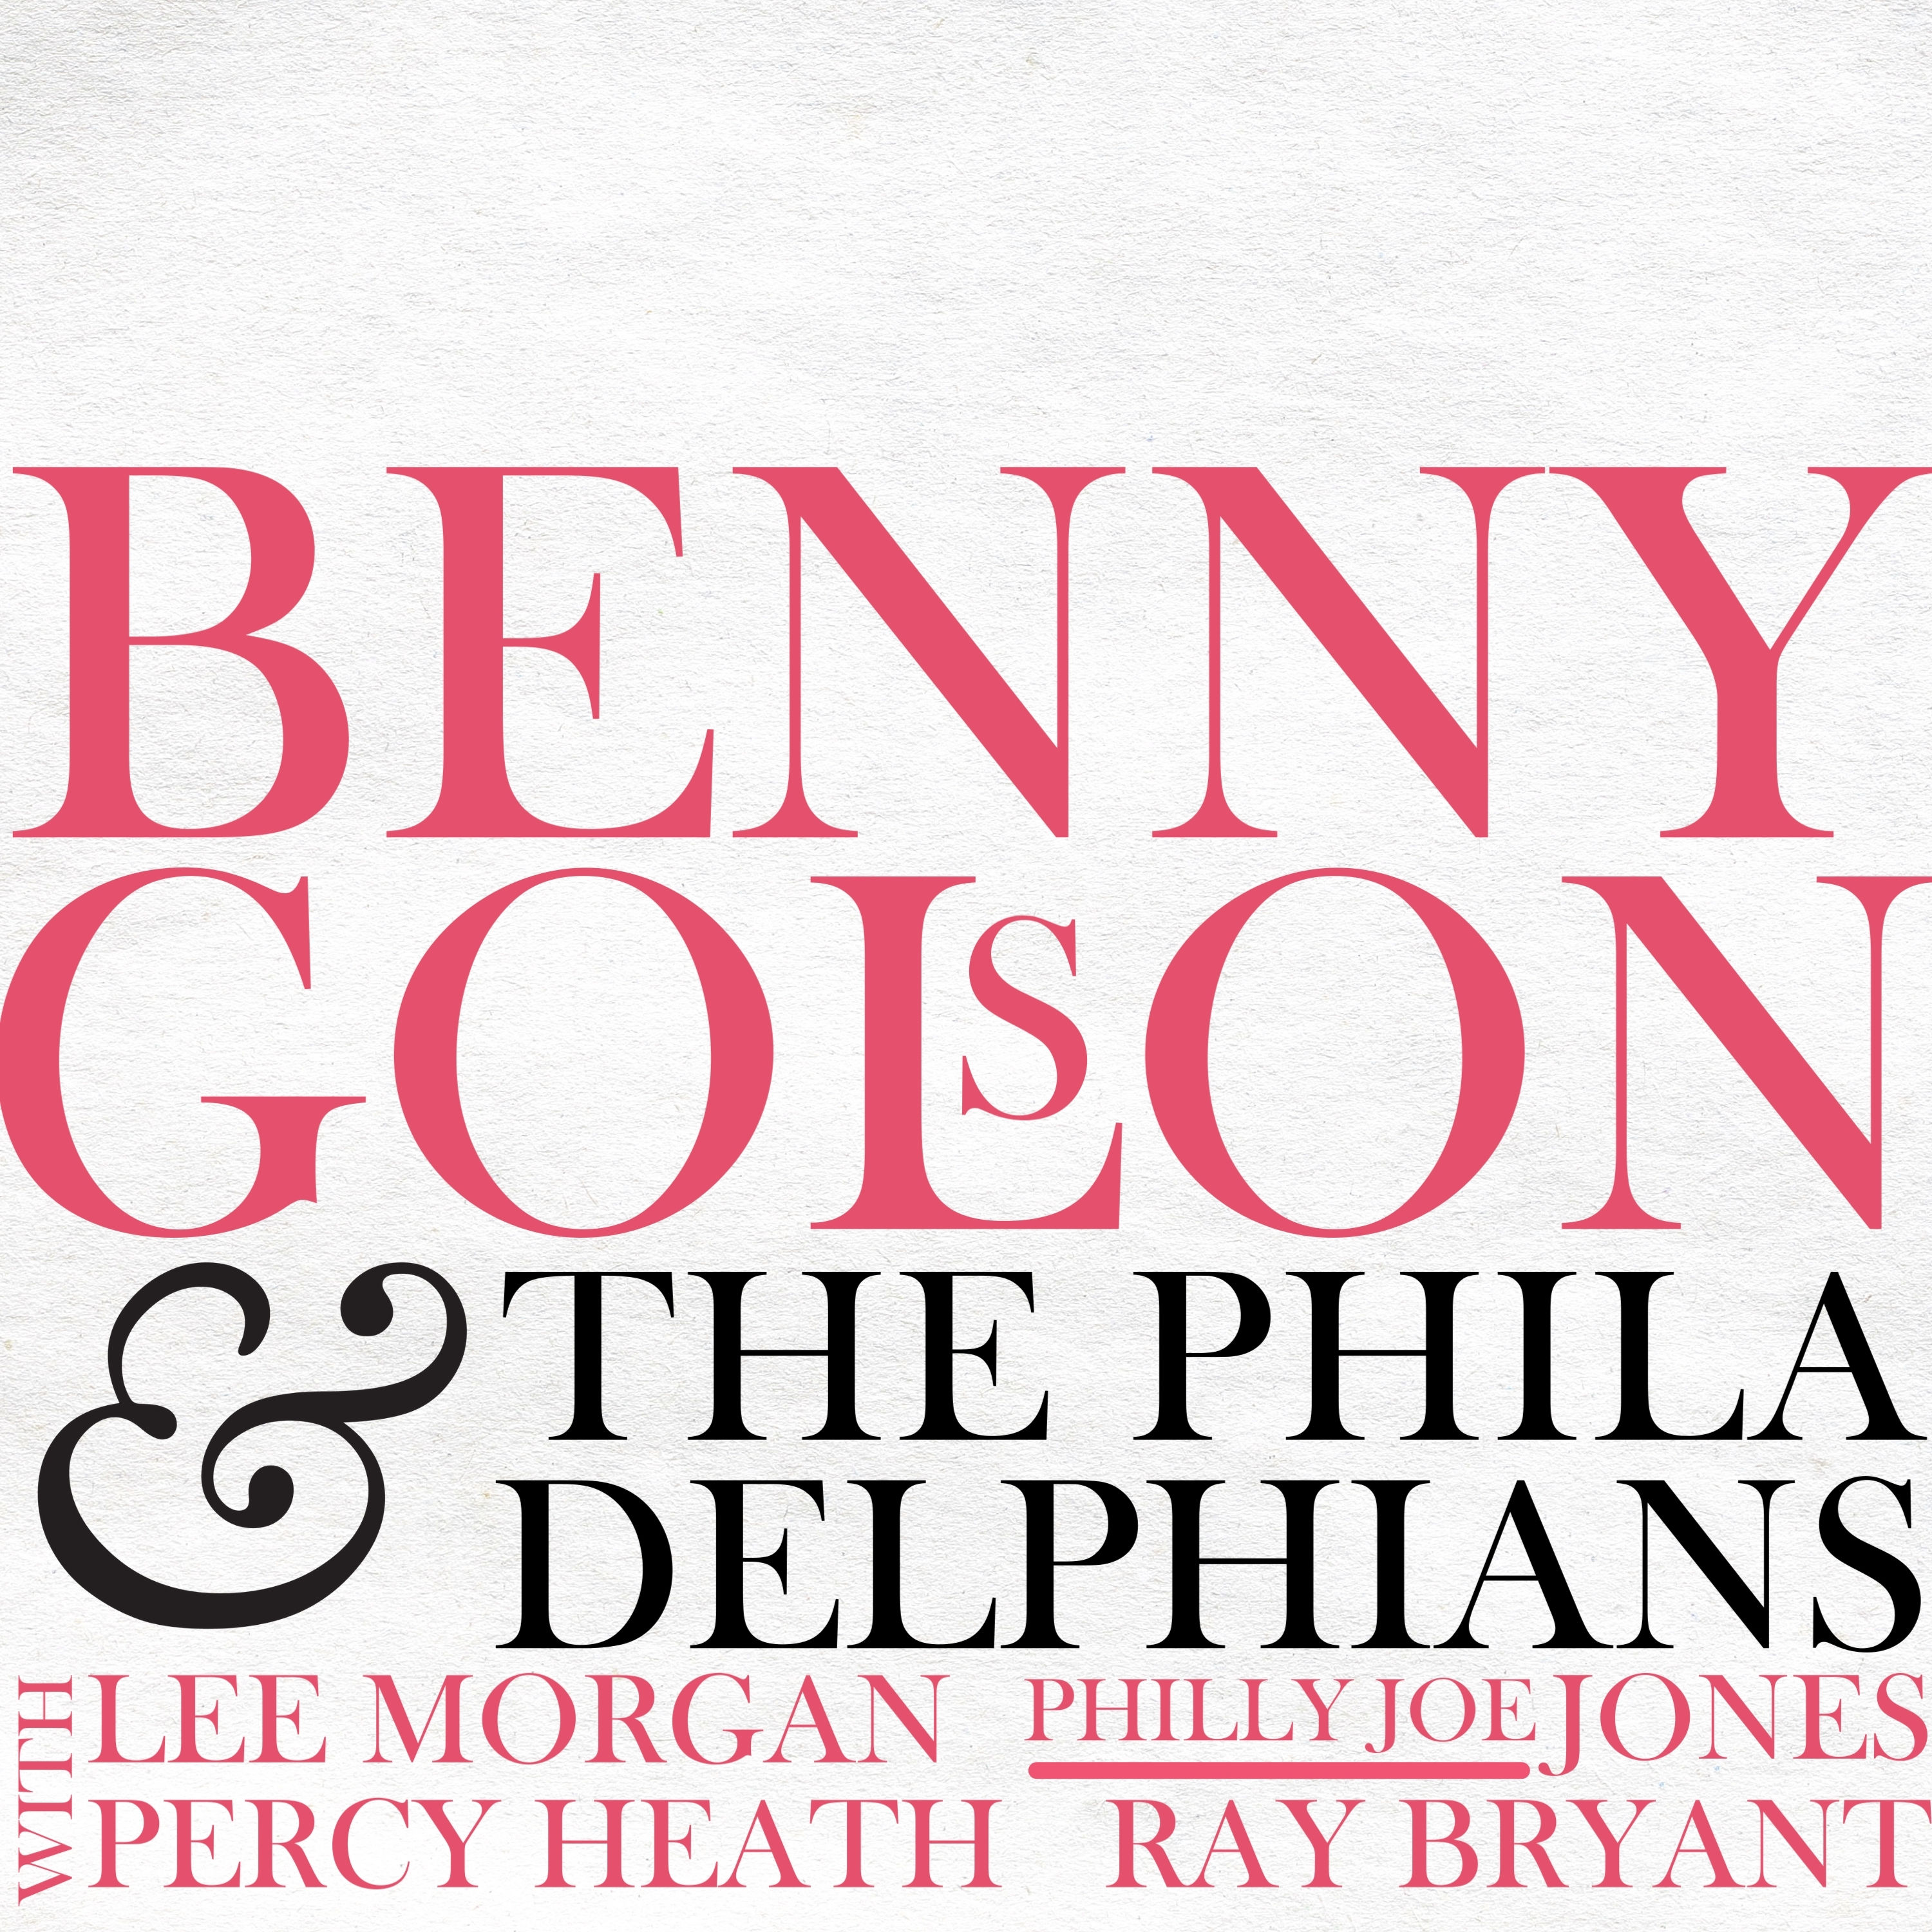 Benny Golson & The Philadelphians - Benny Golson & The Philadelphians (1958/2021) [FLAC 24bit/48kHz]